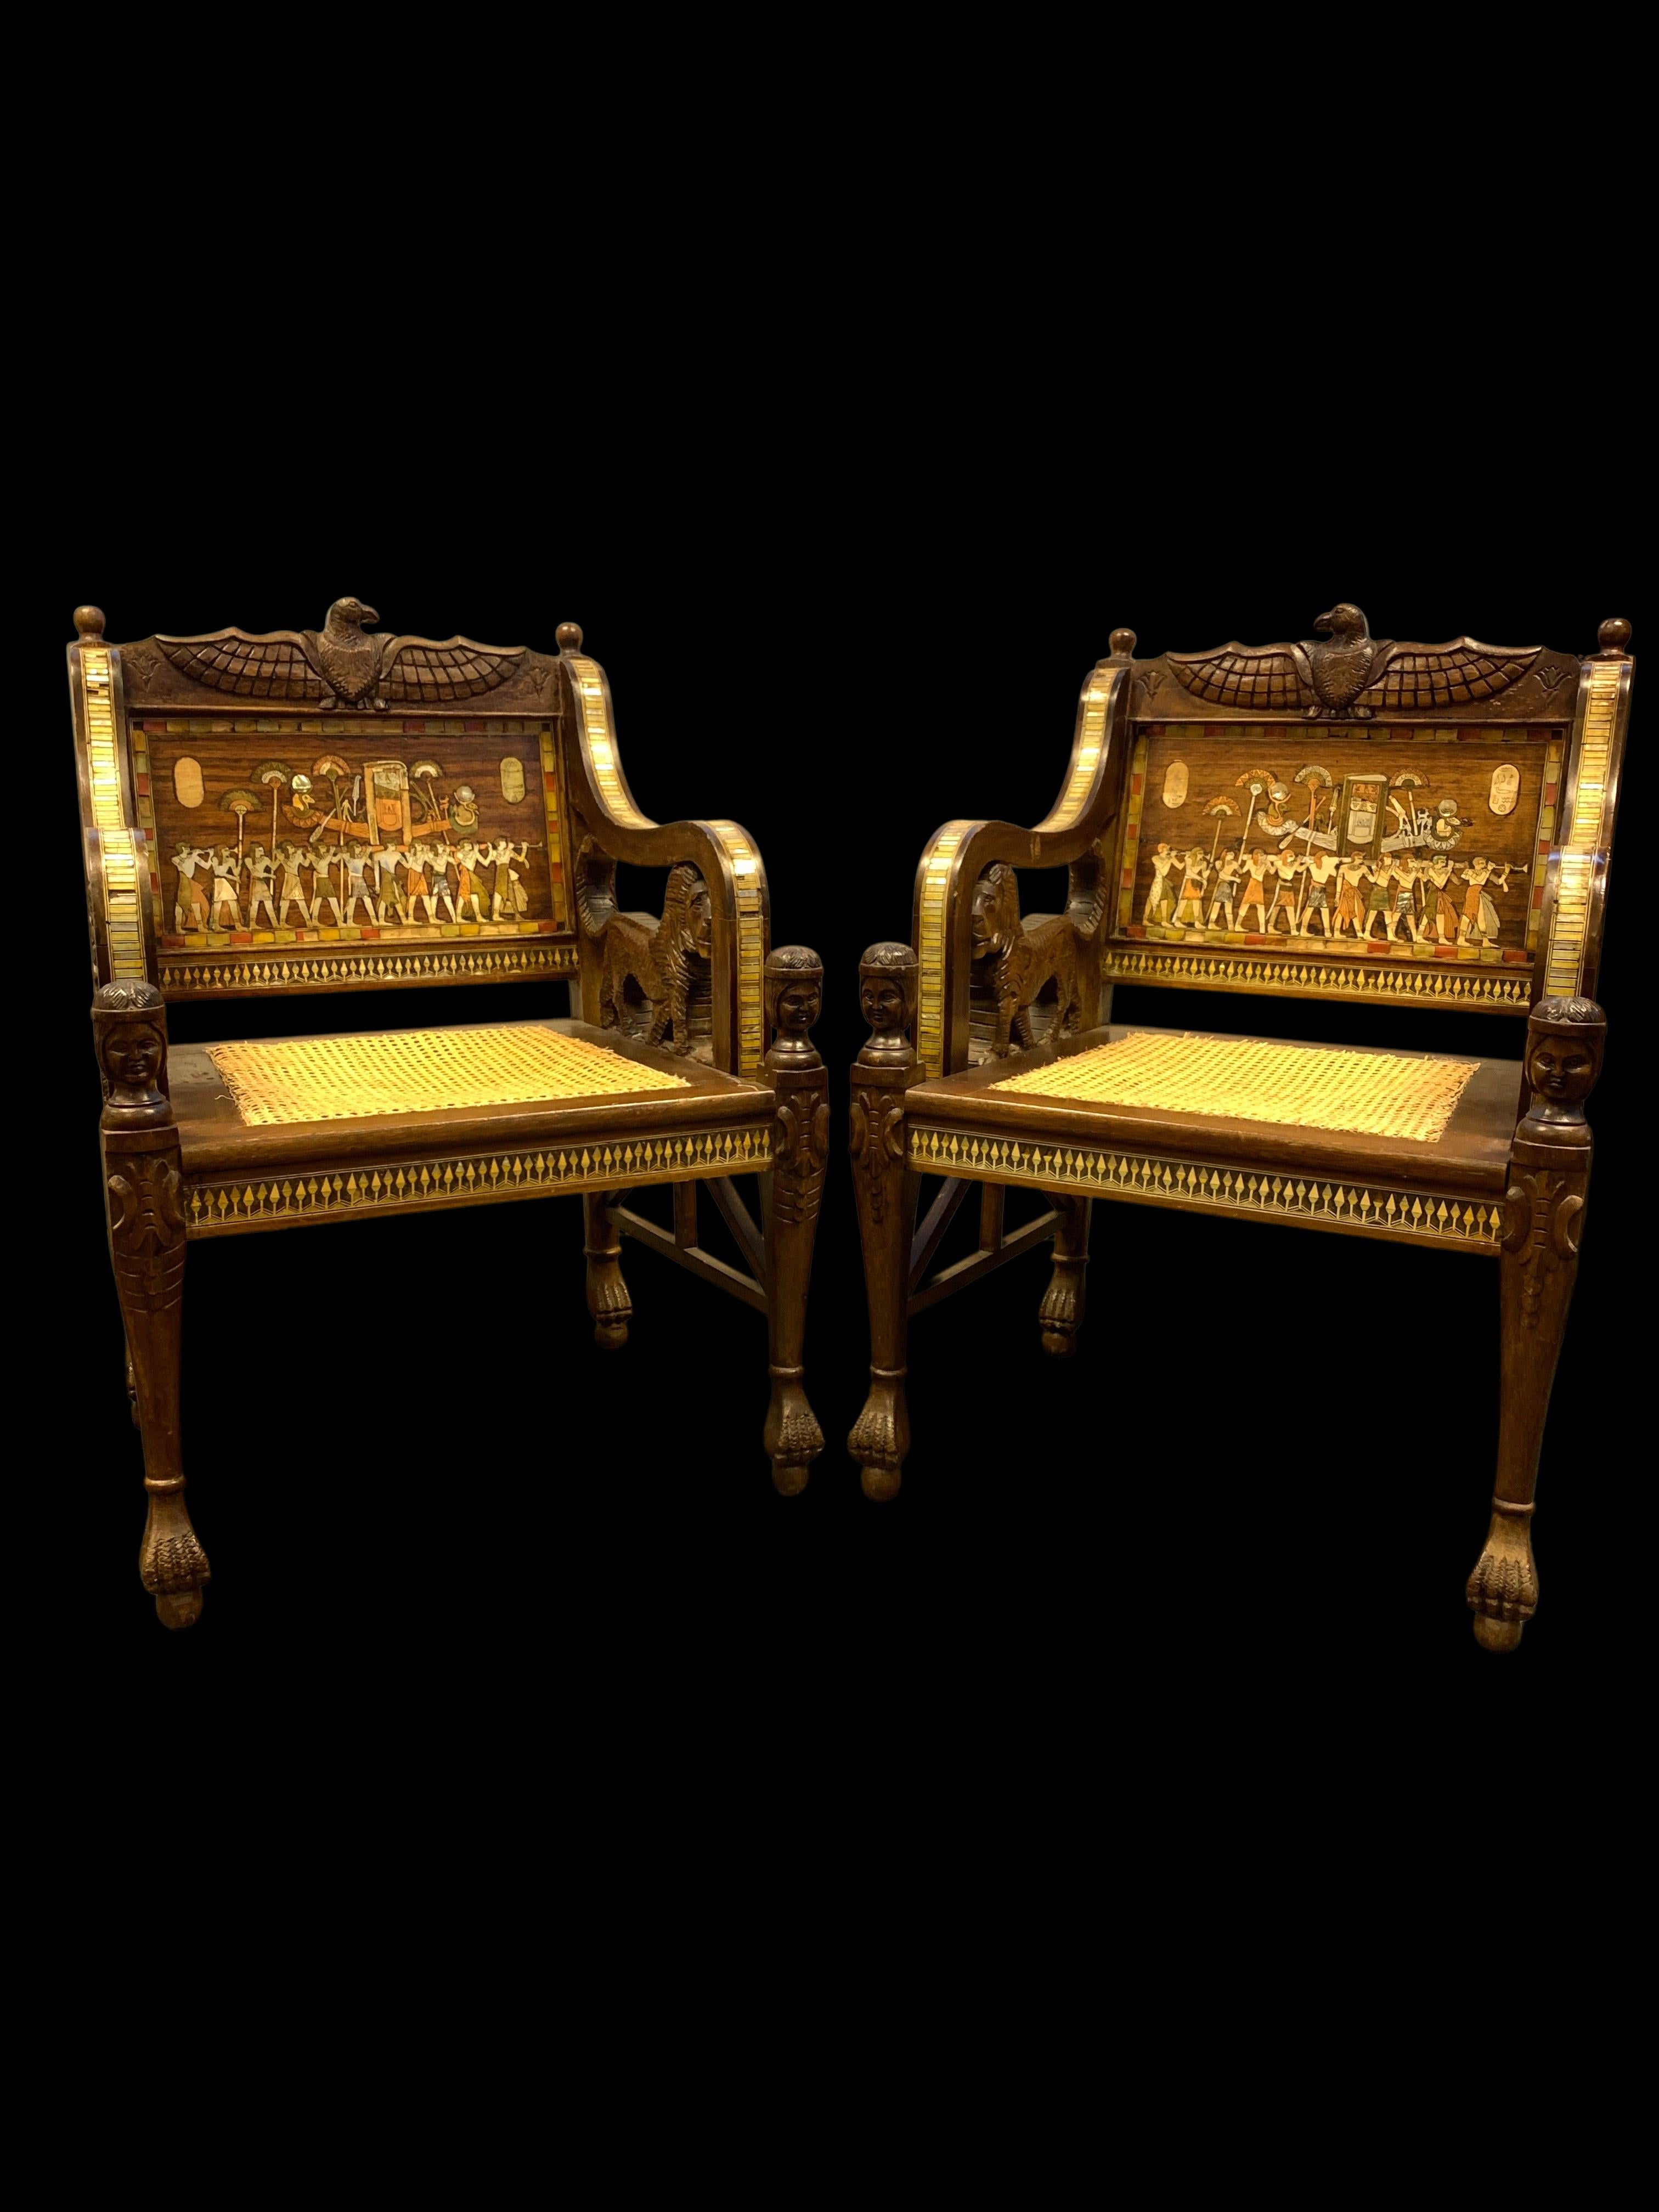 Exquisite und seltene Satz von drei ägyptischen Wiederbelebung Möbel, das Set besteht aus zwei Stühlen und einem Sofa, alle drei Stücke stark mit ägyptischen Motiven aus der pharaonischen Zivilisation verziert. 

Abmessungen: Stühle: H: 92cm, B: